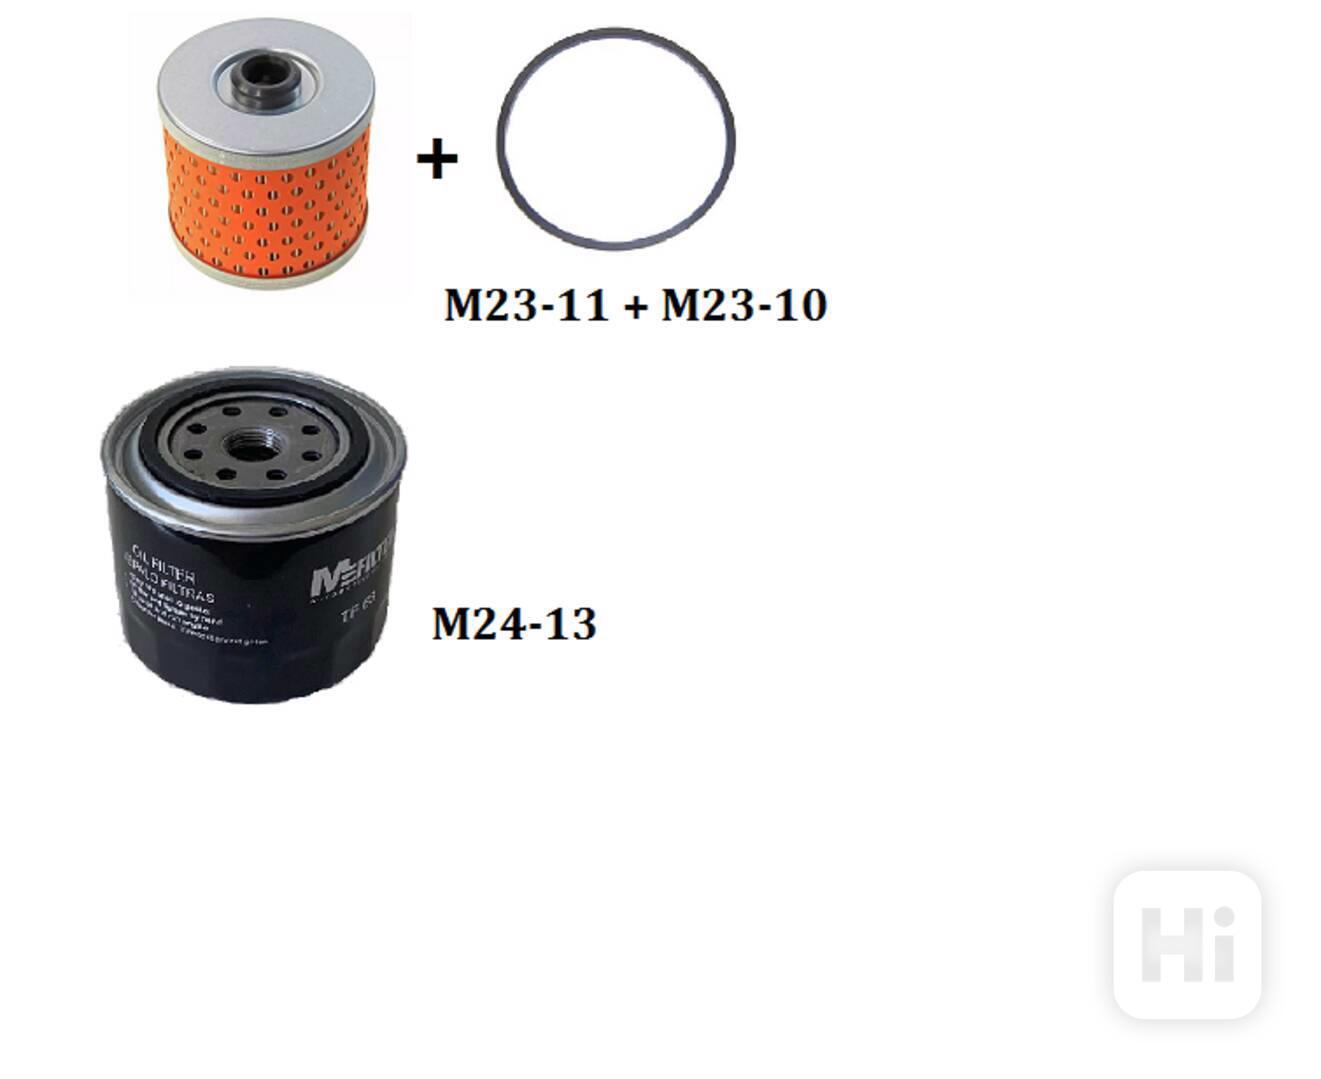 palivový filtr s těsněním + olejový filtr pro Multicar M25 - foto 1